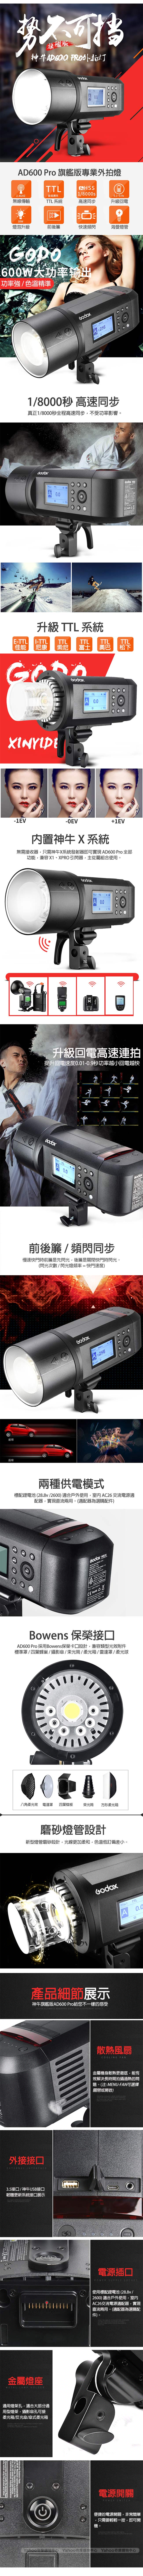 GODOX 神牛 AD600 Pro 600W TTL 鋰電池一體式外拍燈 (公司貨)